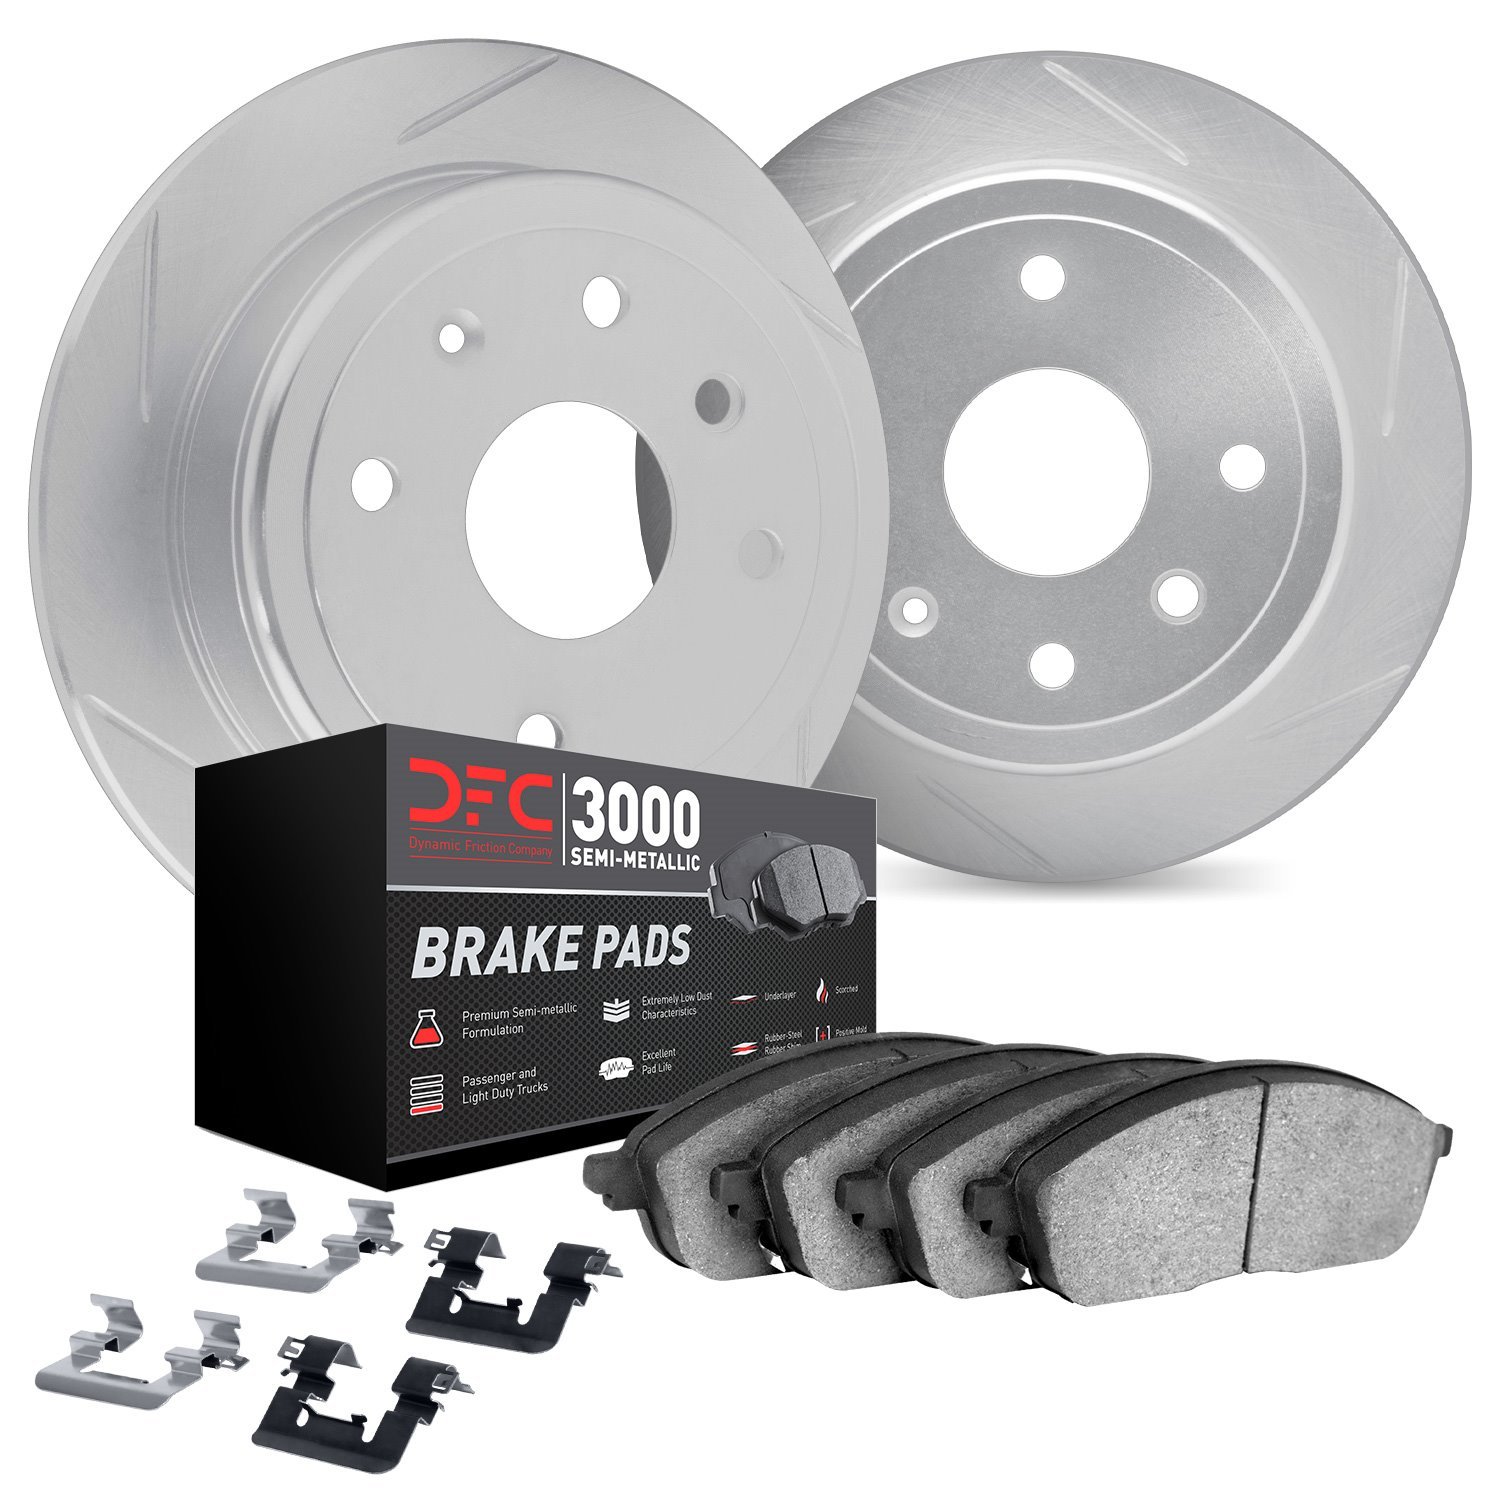 5112-63131 Slotted Brake Rotors with 3000-Series Semi-Metallic Brake Pads Kit & Hardware [Silver], 2012-2018 Mercedes-Benz, Posi